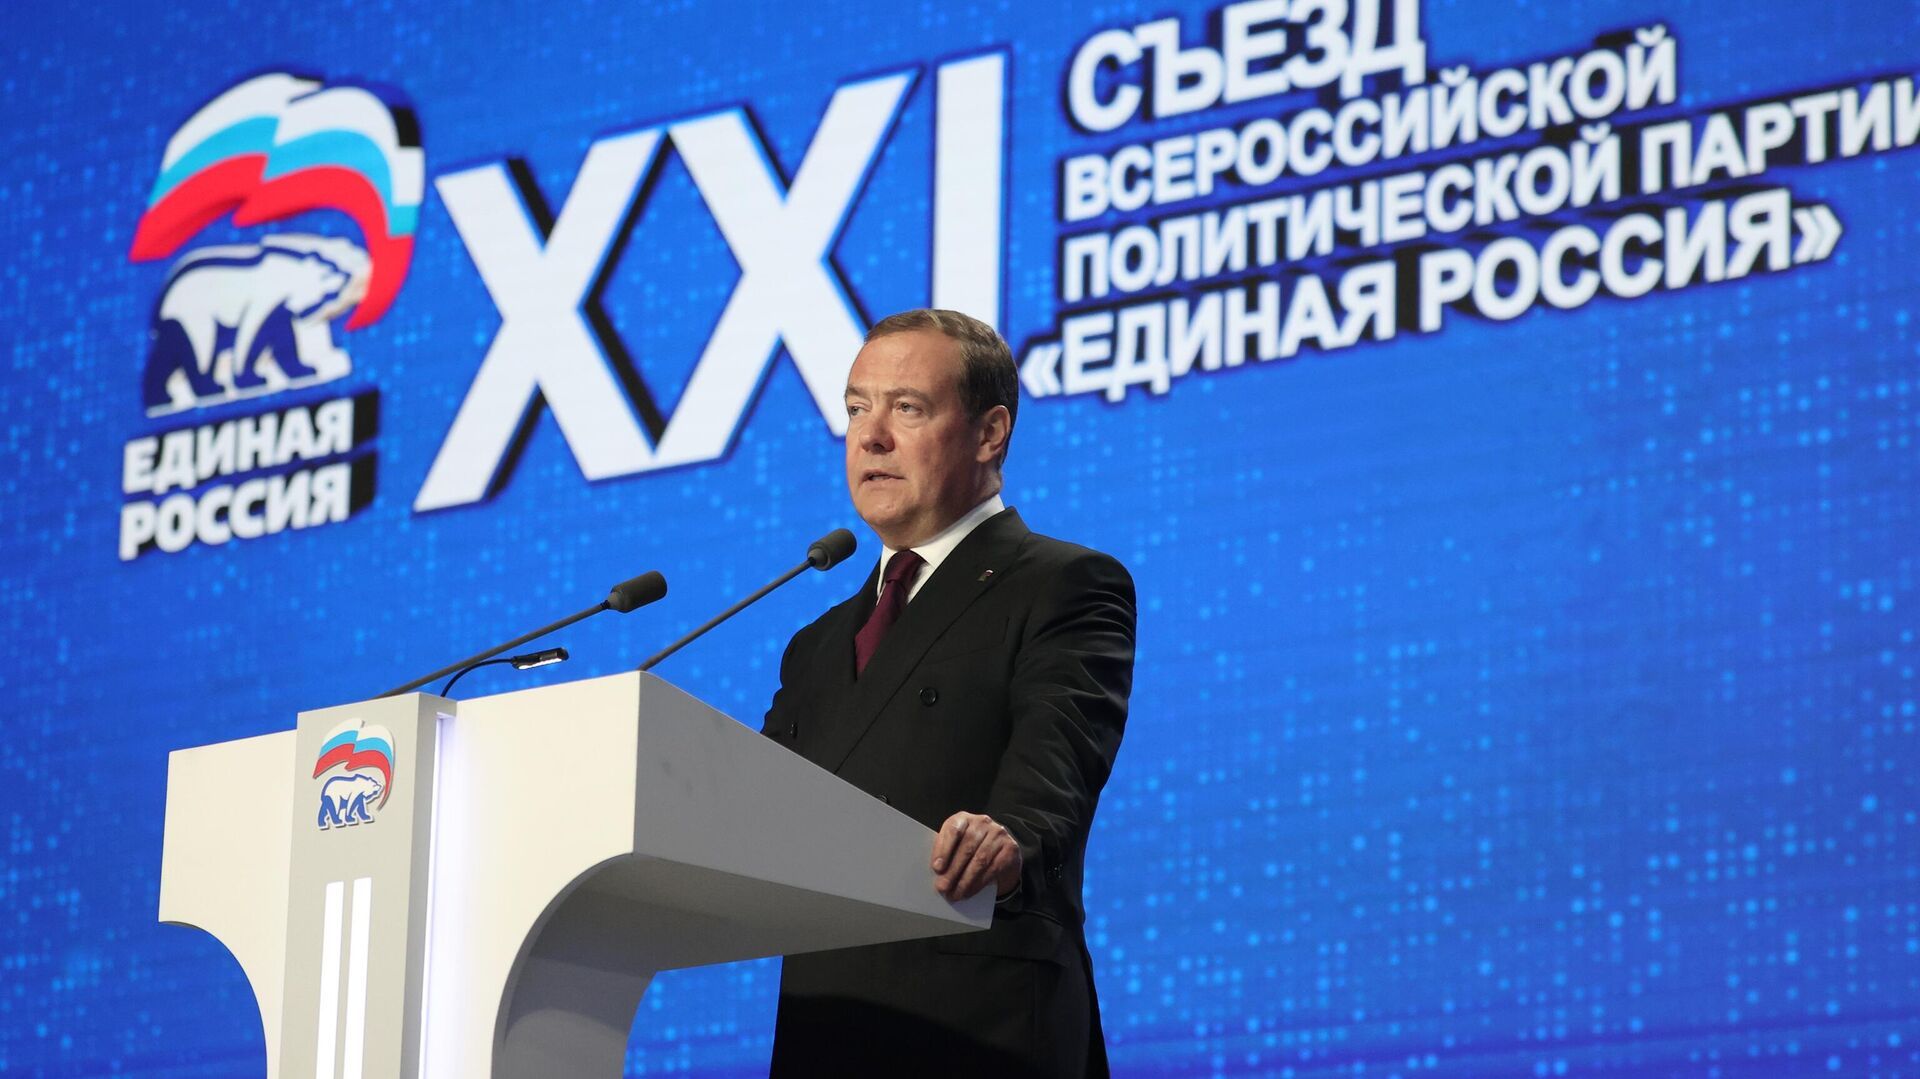 Помощь новым субъектам в интеграции - крайне важная задача, заявил Медведев